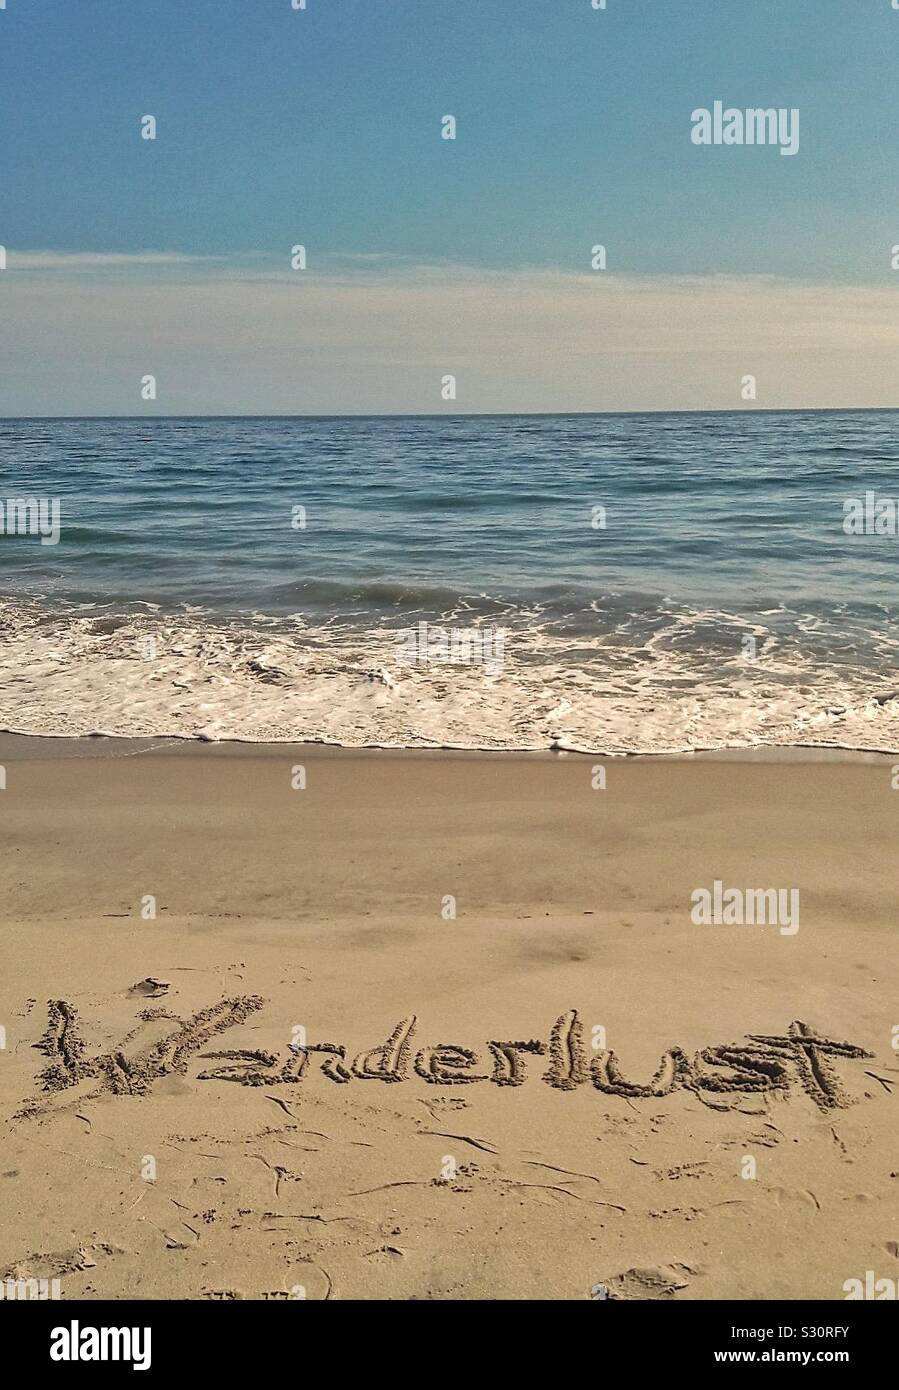 La palabra Wanderlust escrito en la arena de la playa, con vistas al océano. Foto de stock